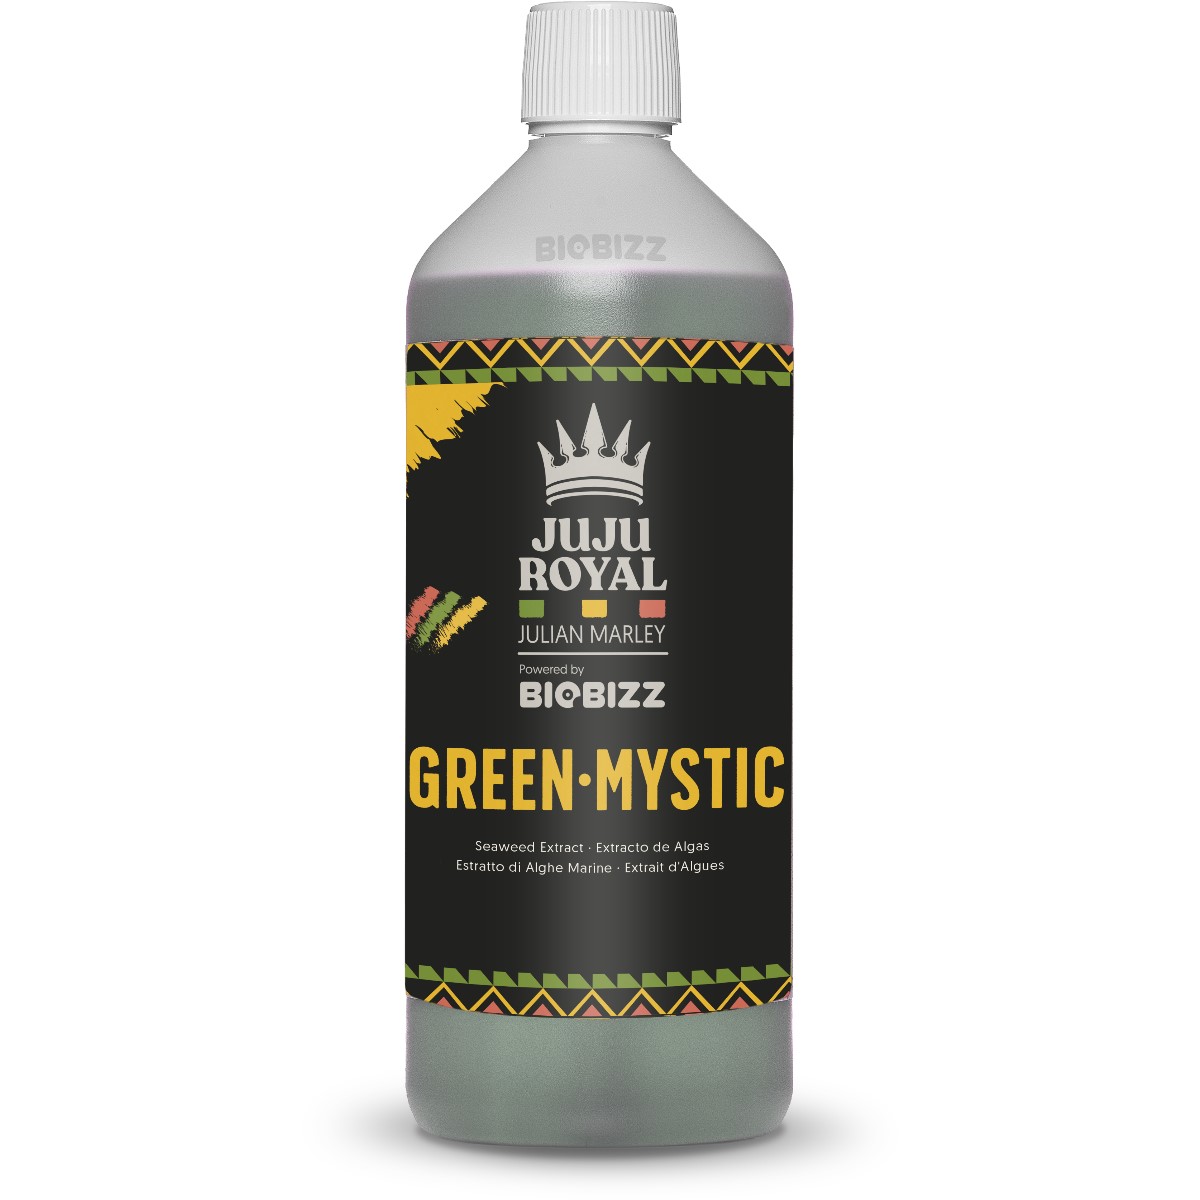 BioBizz Juju Royal Green Mystic 1L